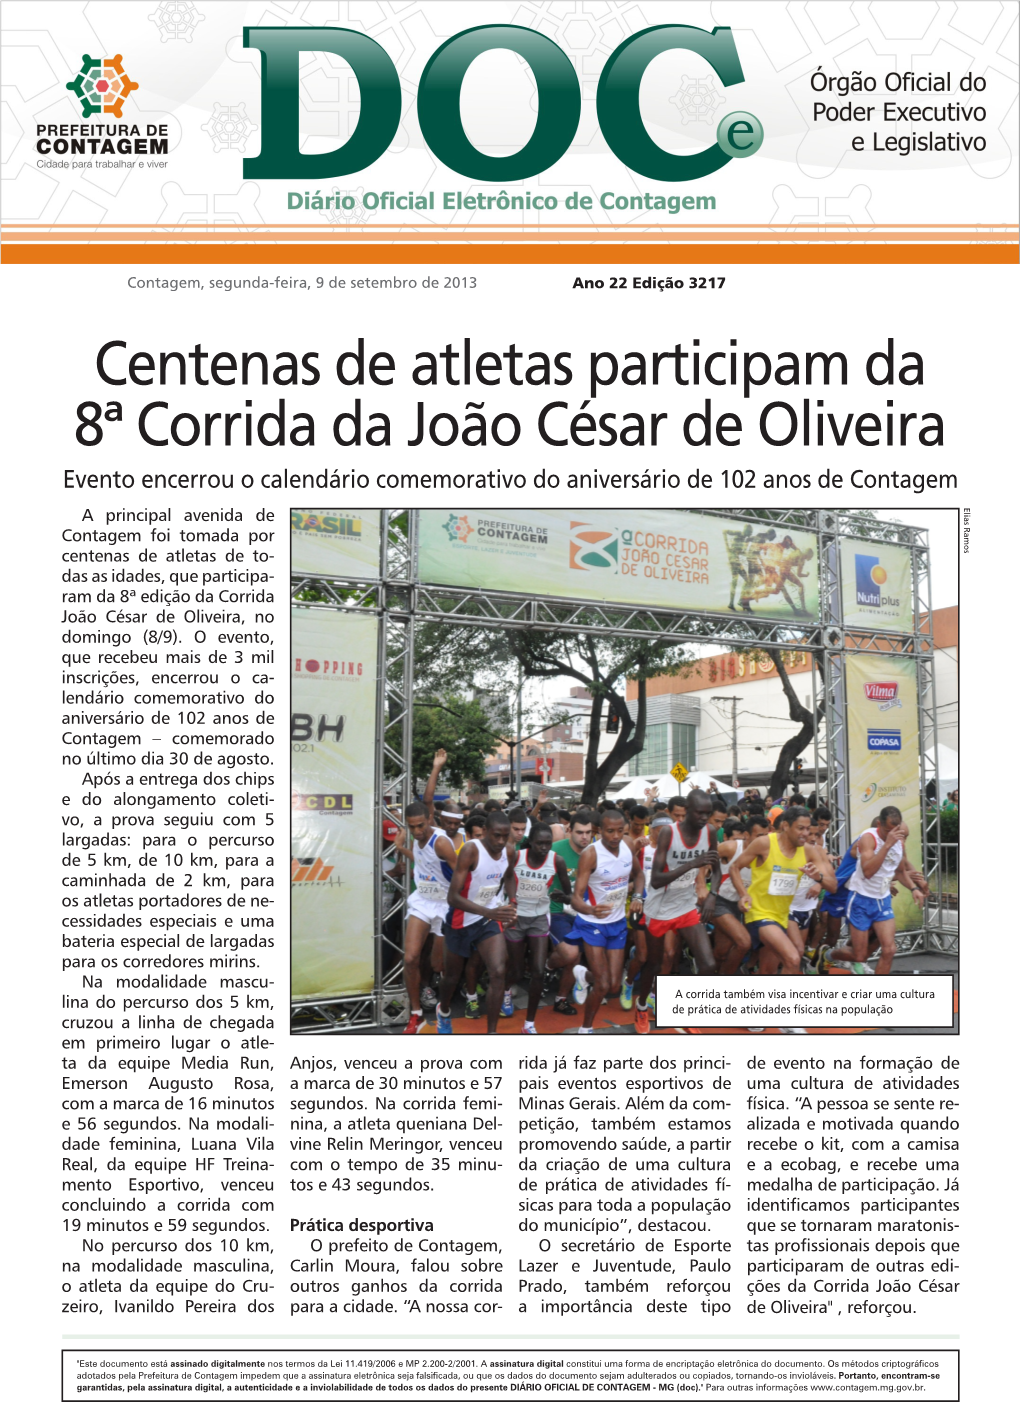 Centenas De Atletas Participam Da 8ª Corrida Da João César De Oliveira